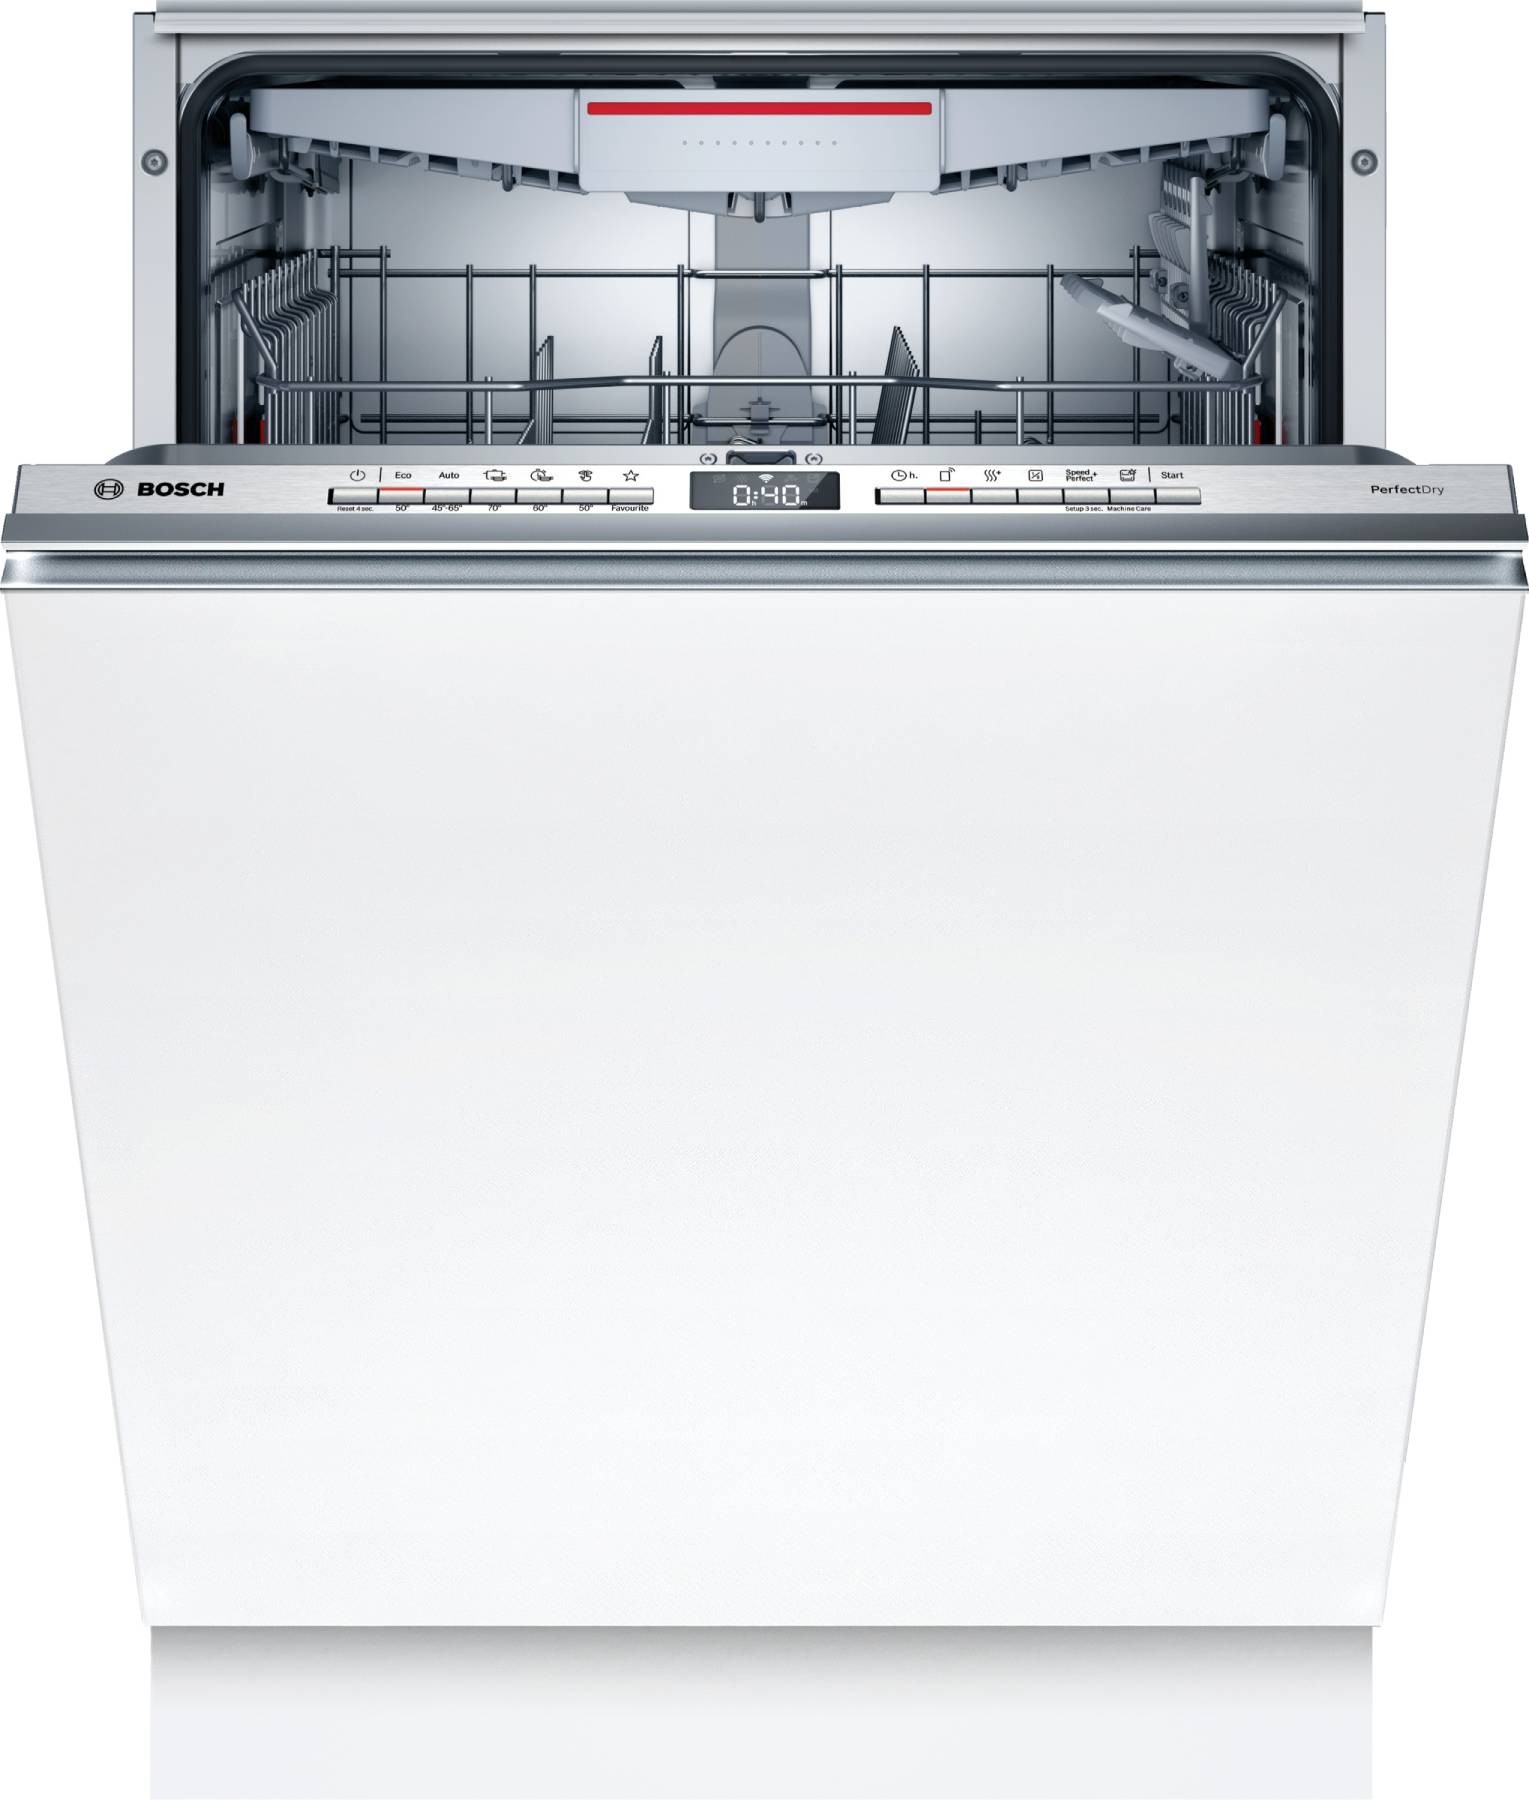 BOSCH Lave vaisselle tout integrable 60 cm Série 6 6 programmes 44dB 14 couverts   SBD6TCX00E